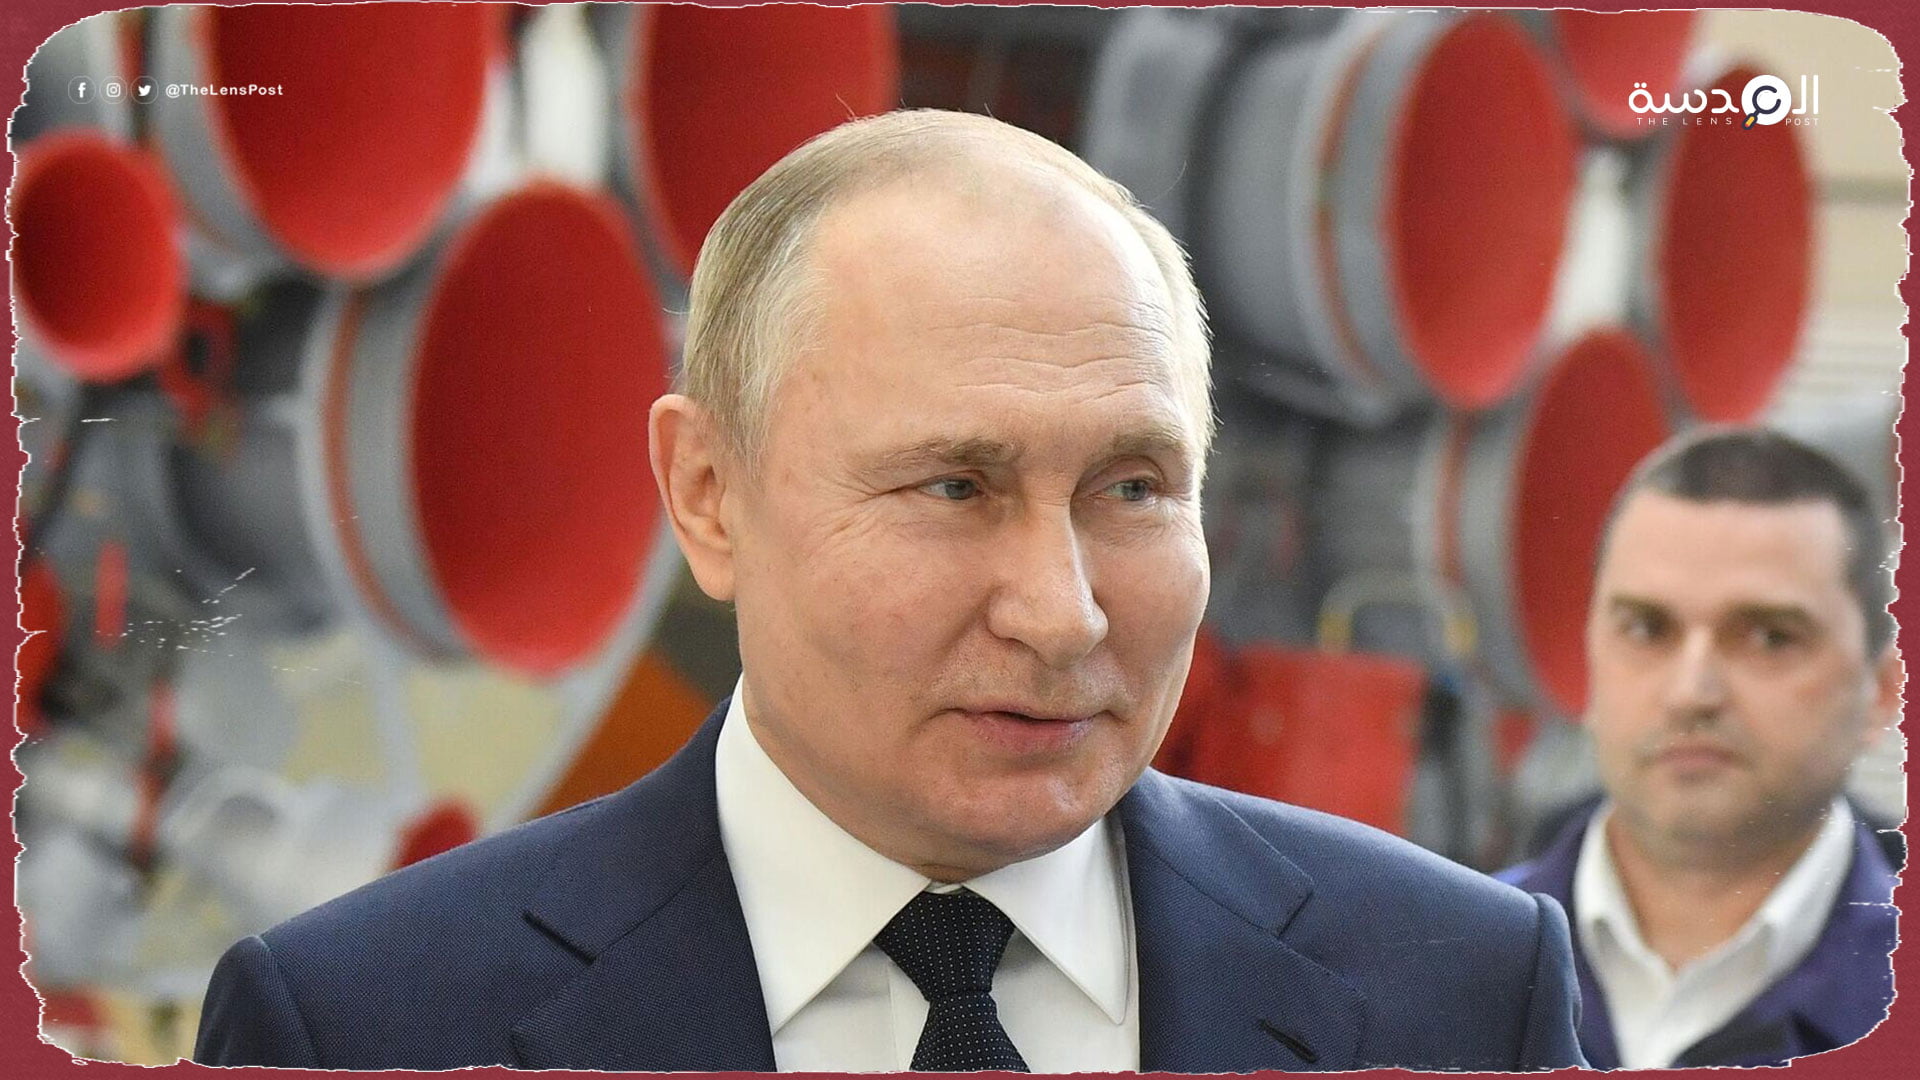 صحيفة التايمز: بوتين لن يتغير سلوكه والعقوبات الغربية فشلت 